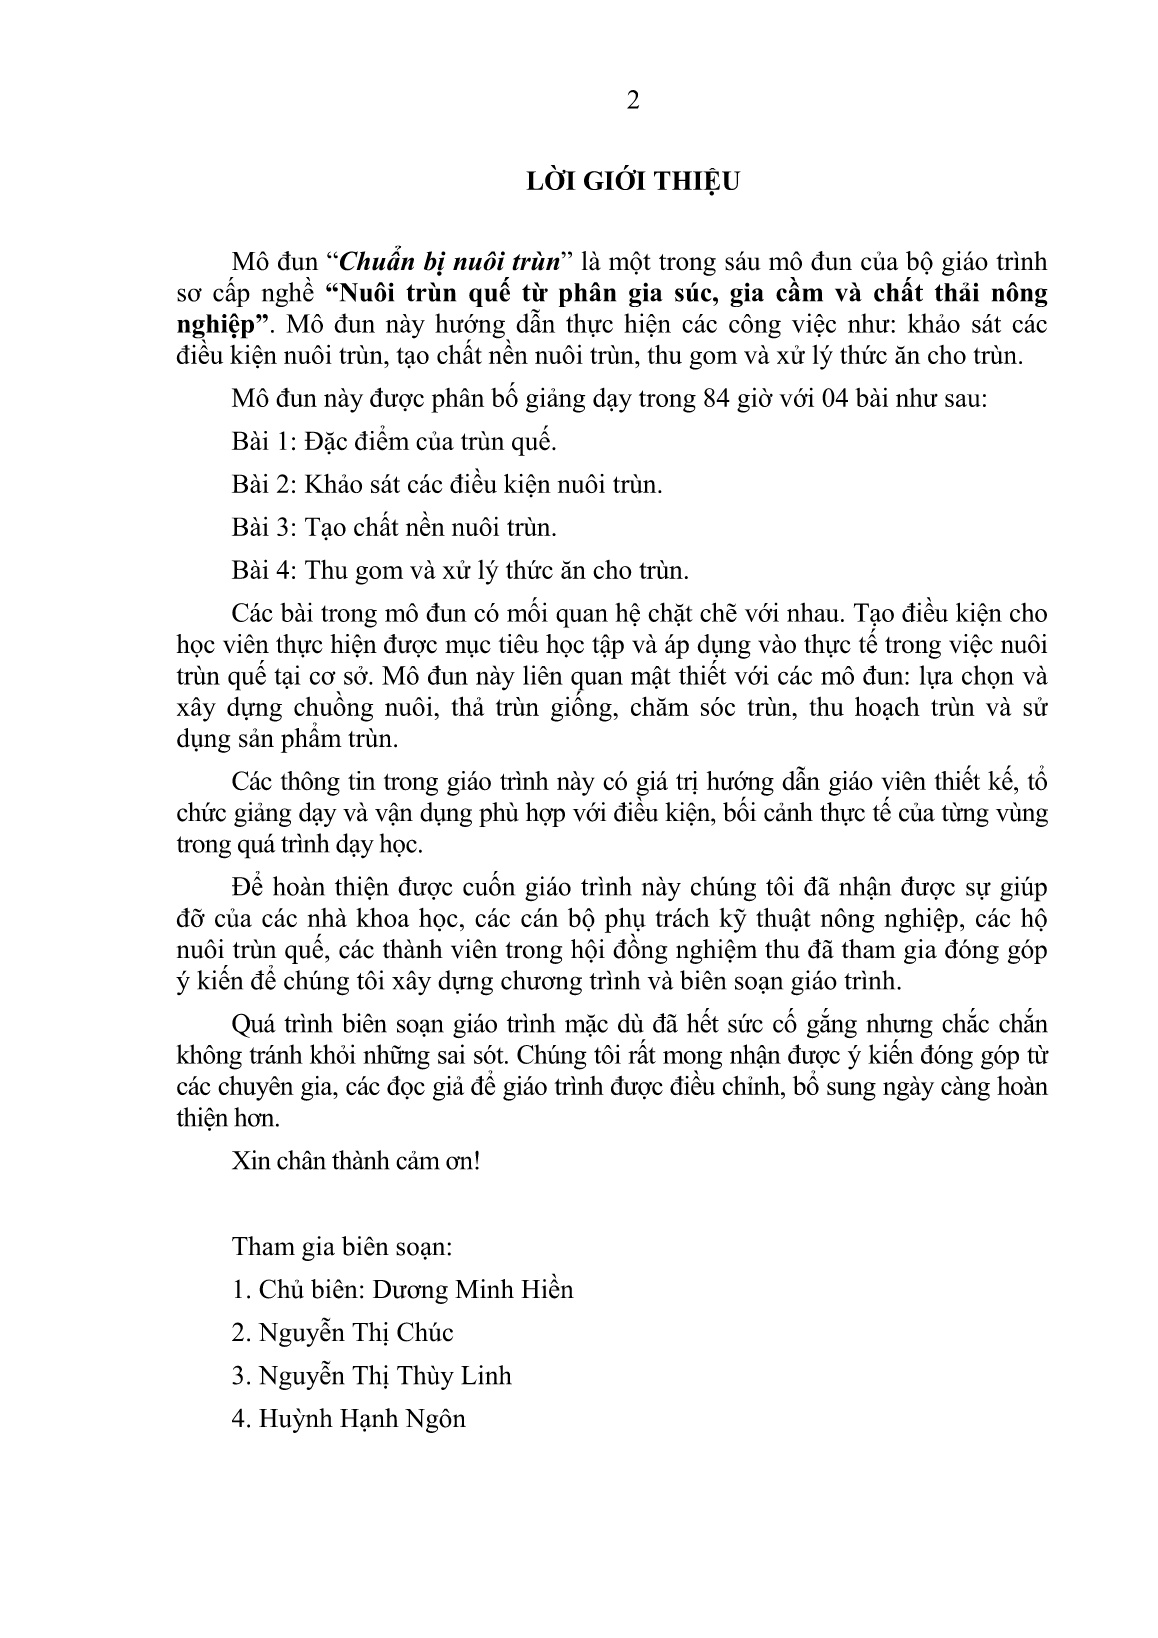 Giáo trình mô đun Chuẩn bị nuôi trùn (Trình độ: Sơ cấp nghề) trang 4